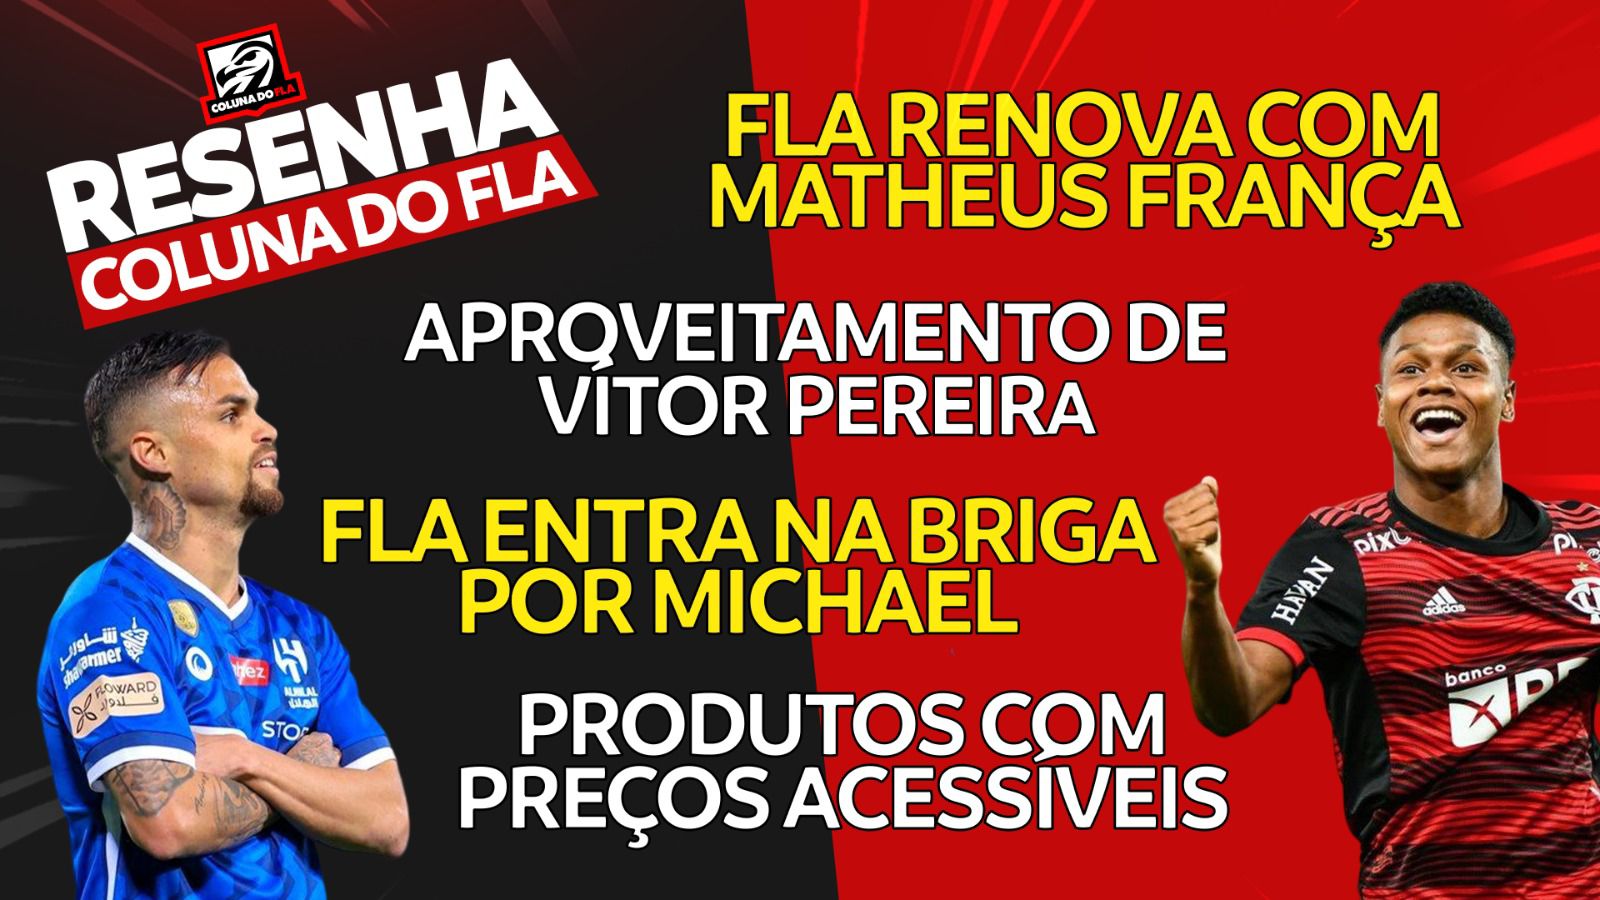 EN DIRECT |  Flamengo dans la bataille pour Michael et renouvellement de Matheus França ;  voir les nouvelles les plus importantes de Rubro-Negro